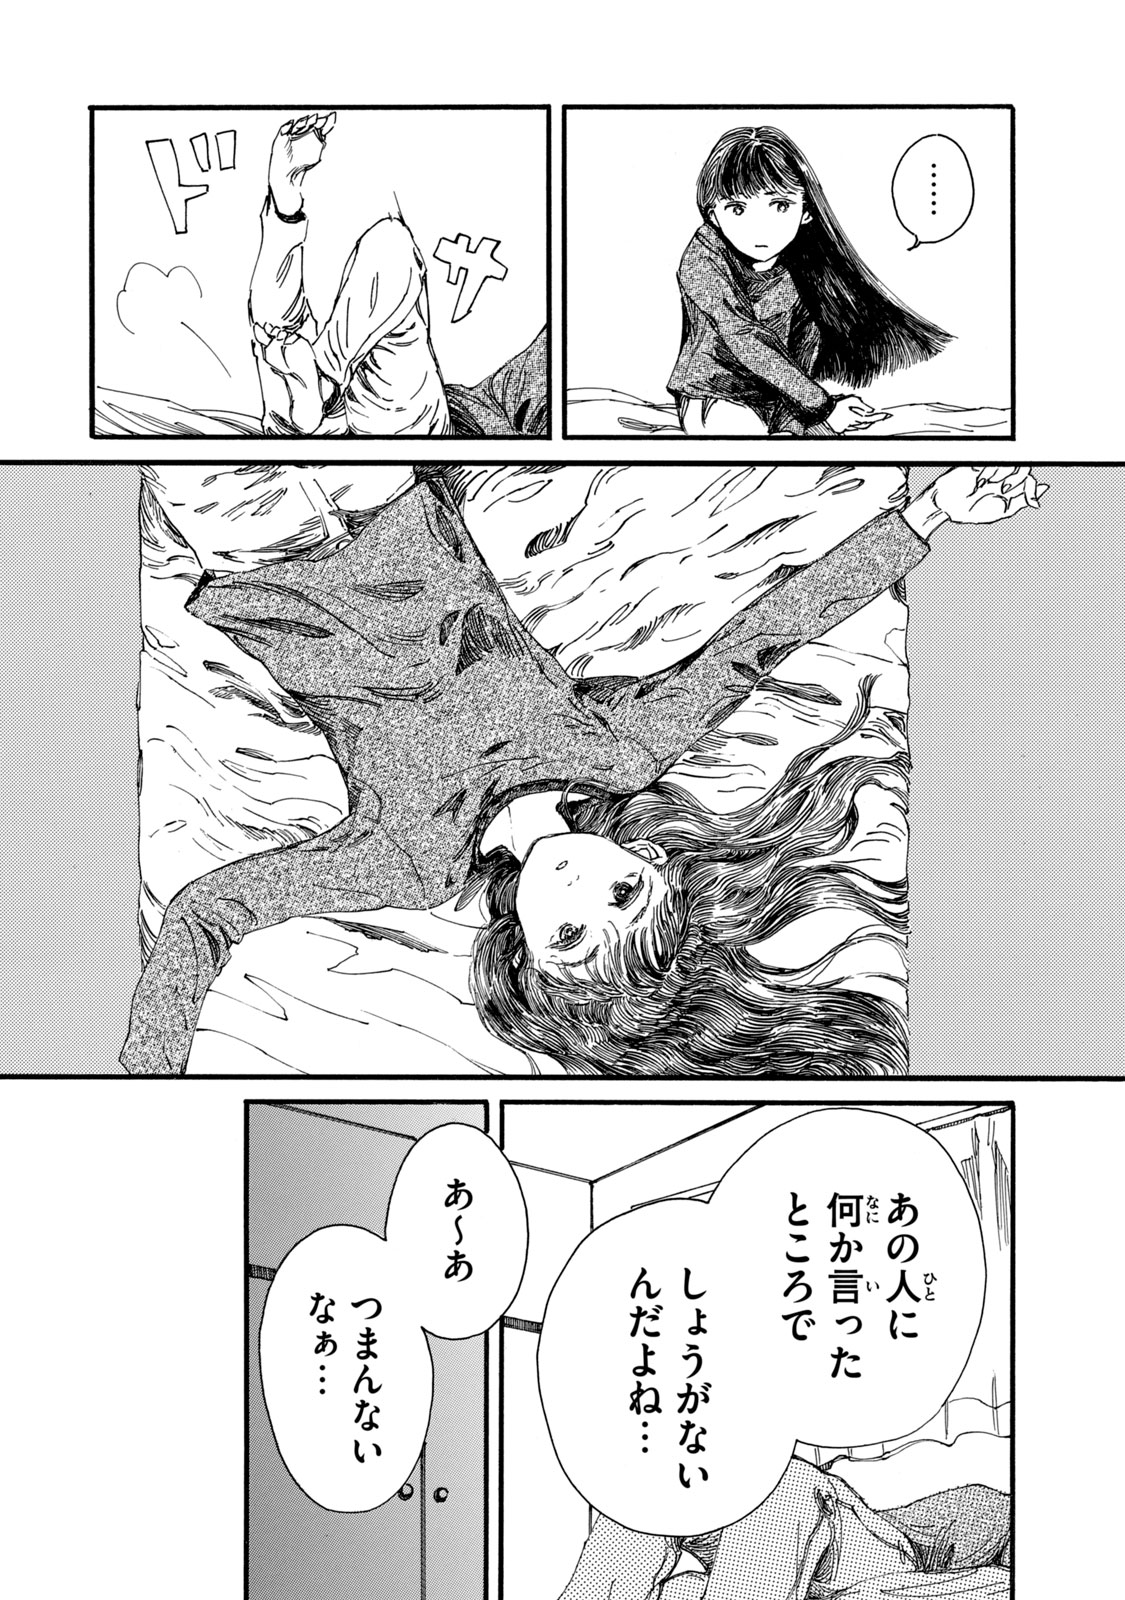 Watashi no Hara no Naka no Bakemono - Chapter 15 - Page 4